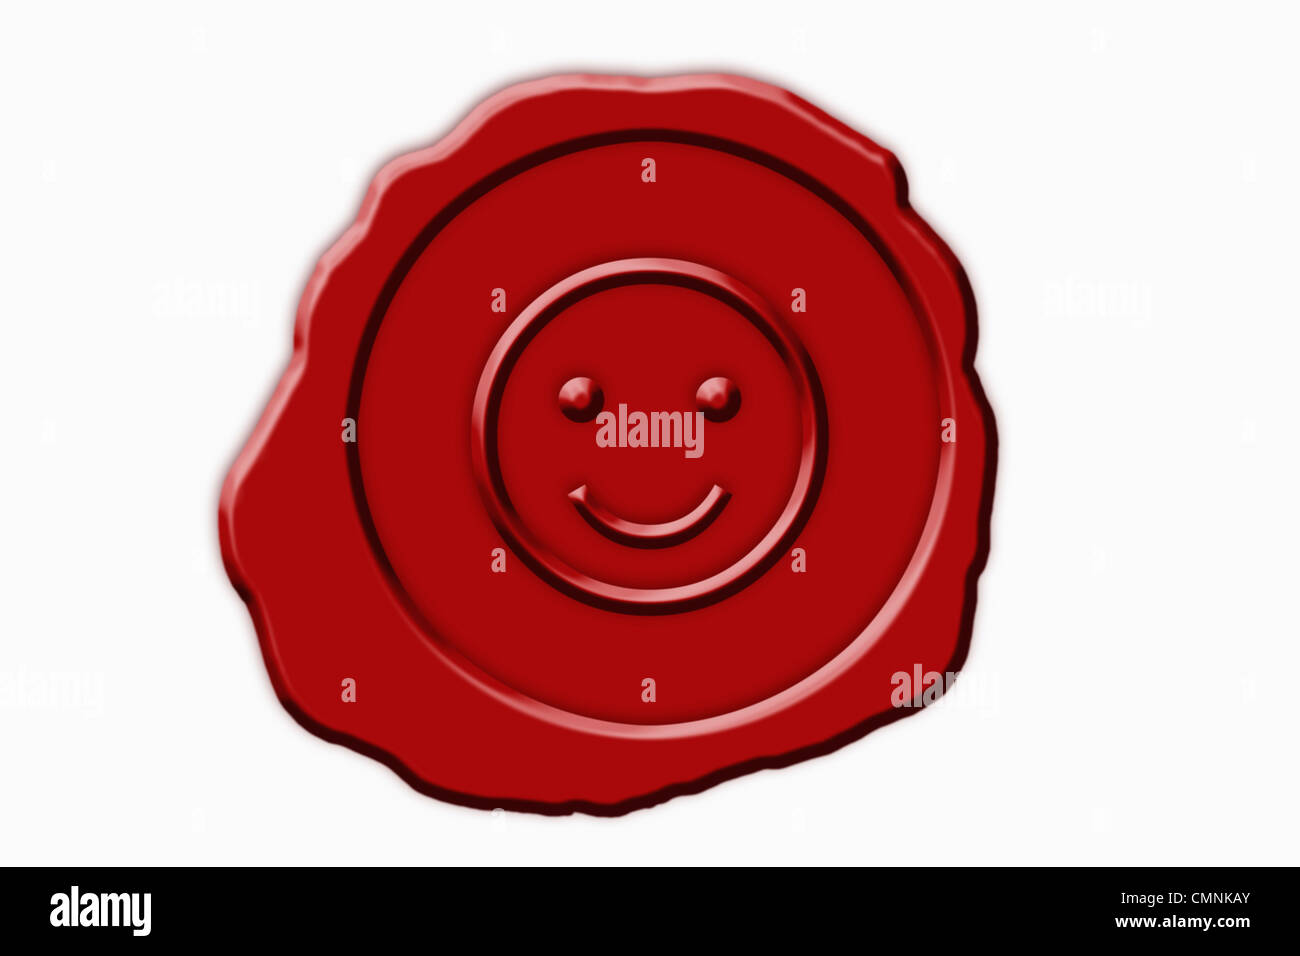 Dettaglio foto di un sigillo rosso con un simbolo Smiley in medio, sfondo bianco. Foto Stock